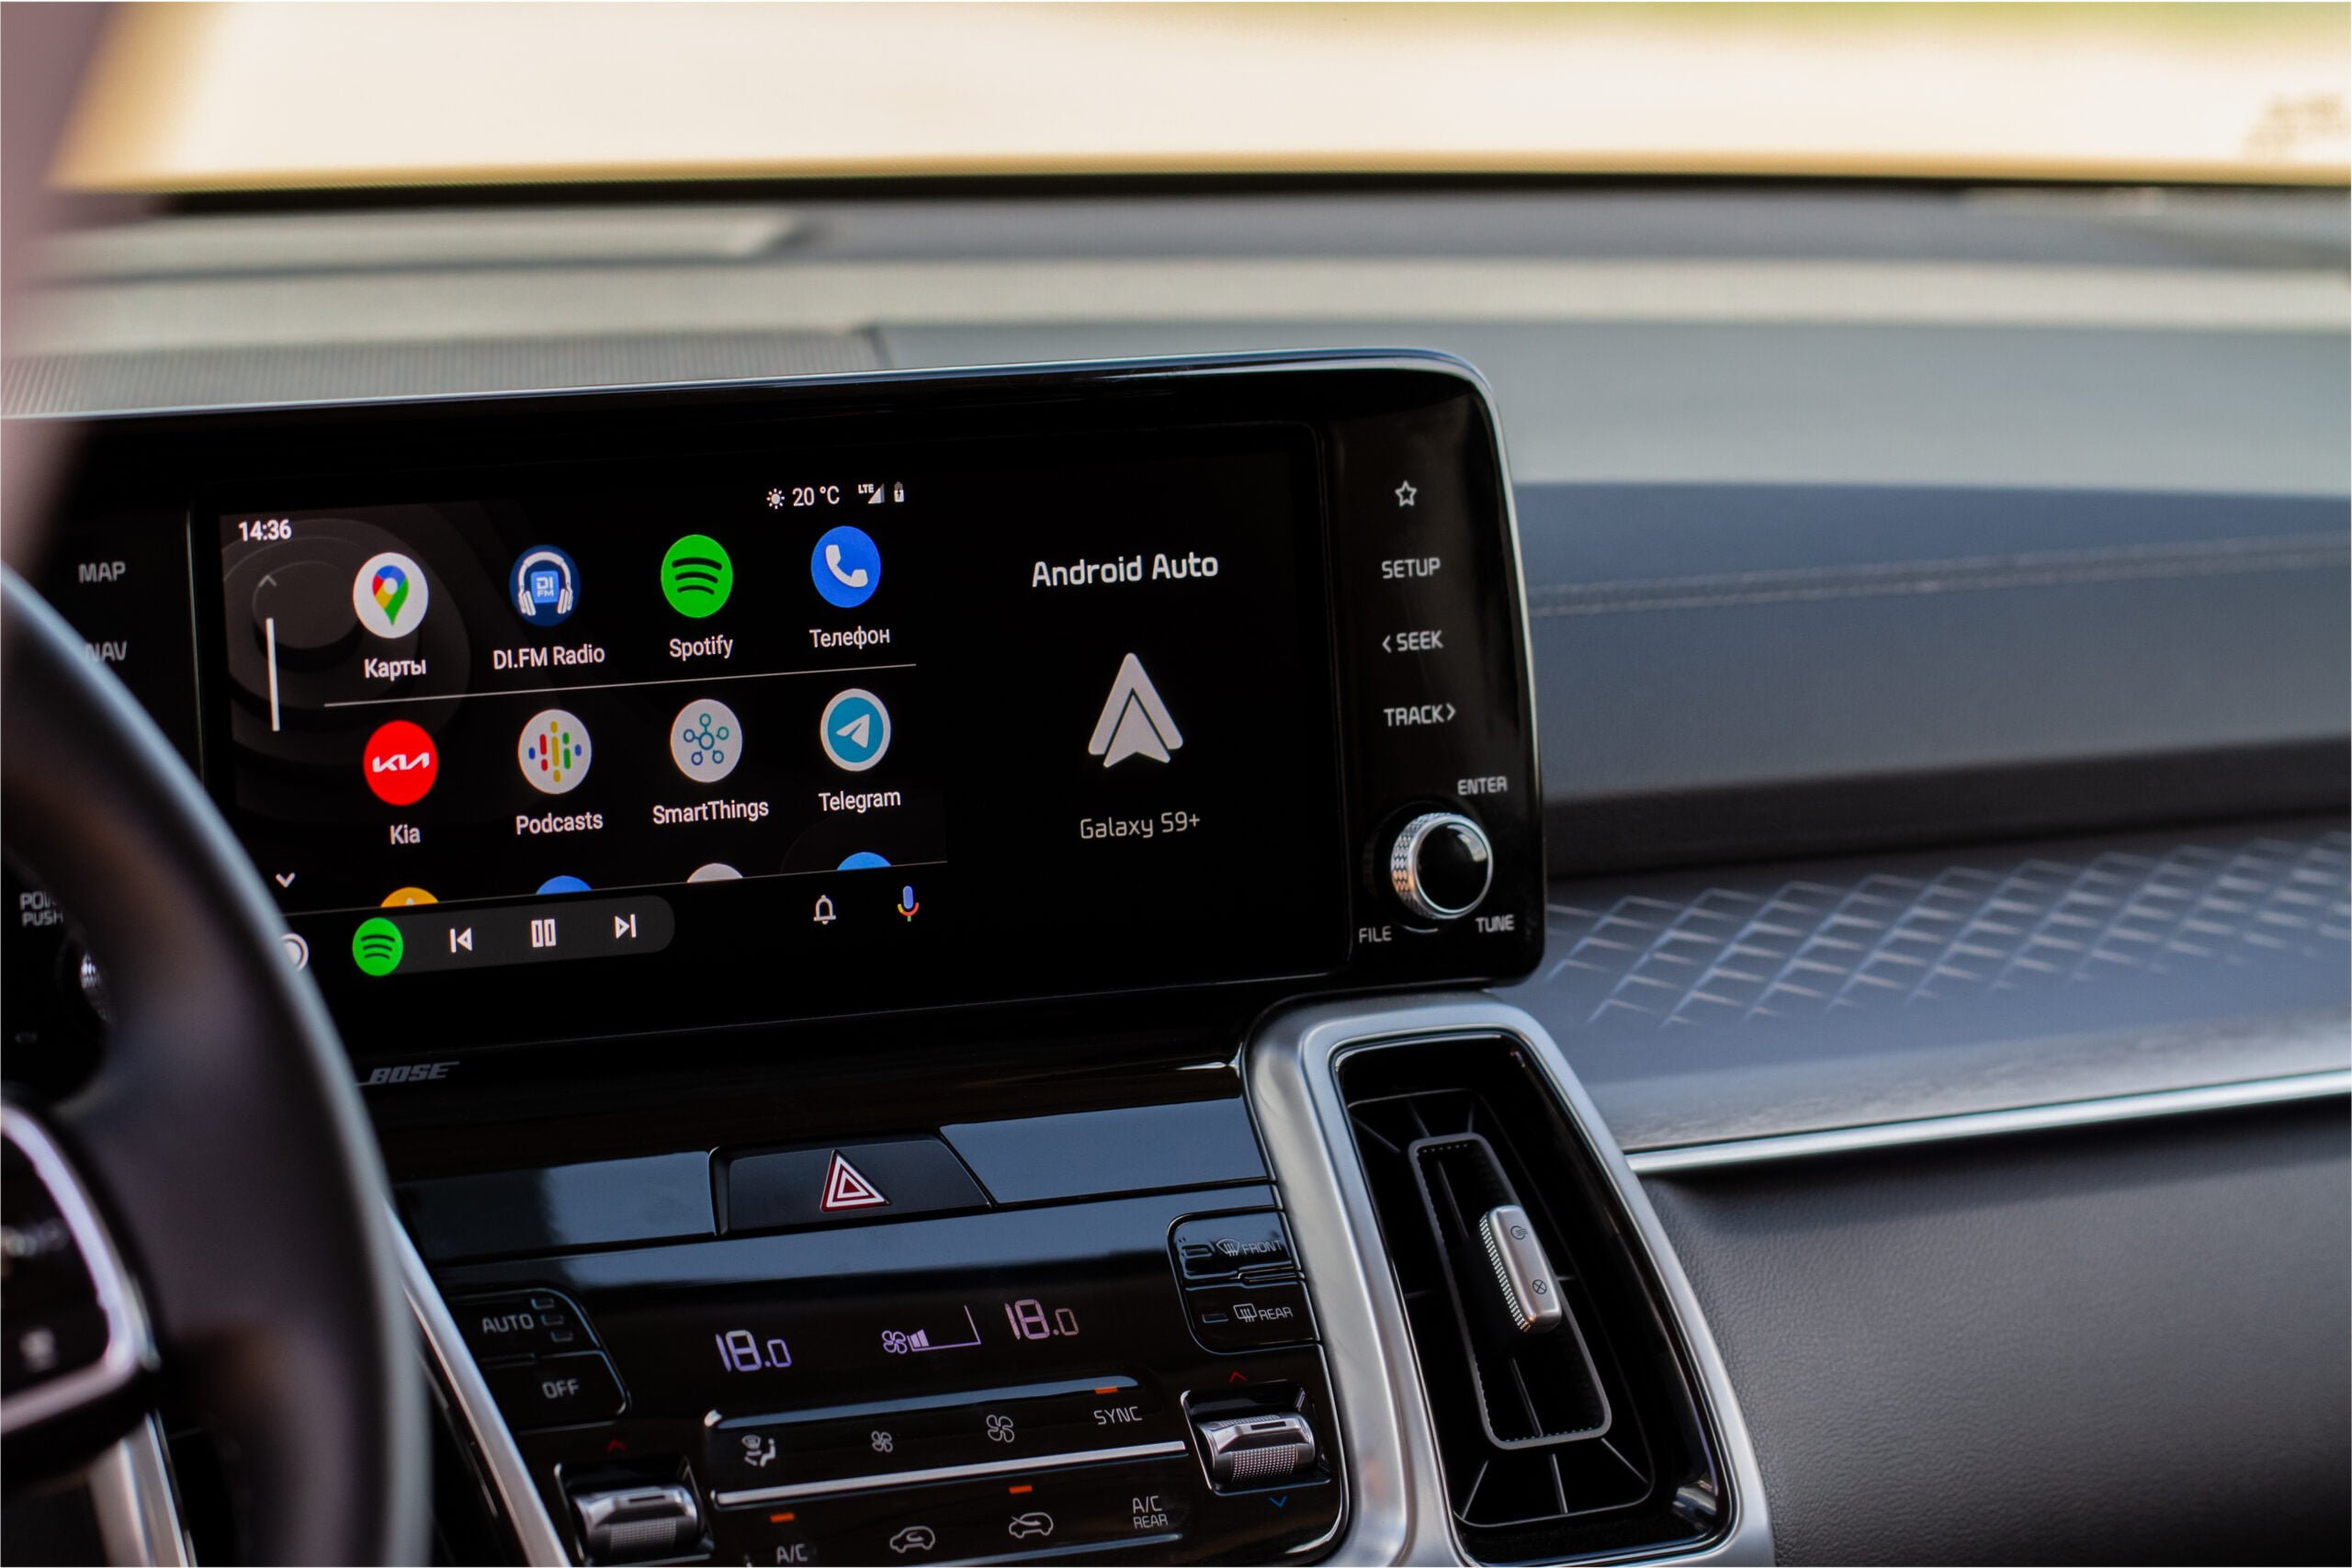 Wyświetlacz systemu multimedialnego w samochodzie z otwartą aplikacją Android Auto pokazującą ikony aplikacji takich jak Mapy, Spotify oraz wiadomości.